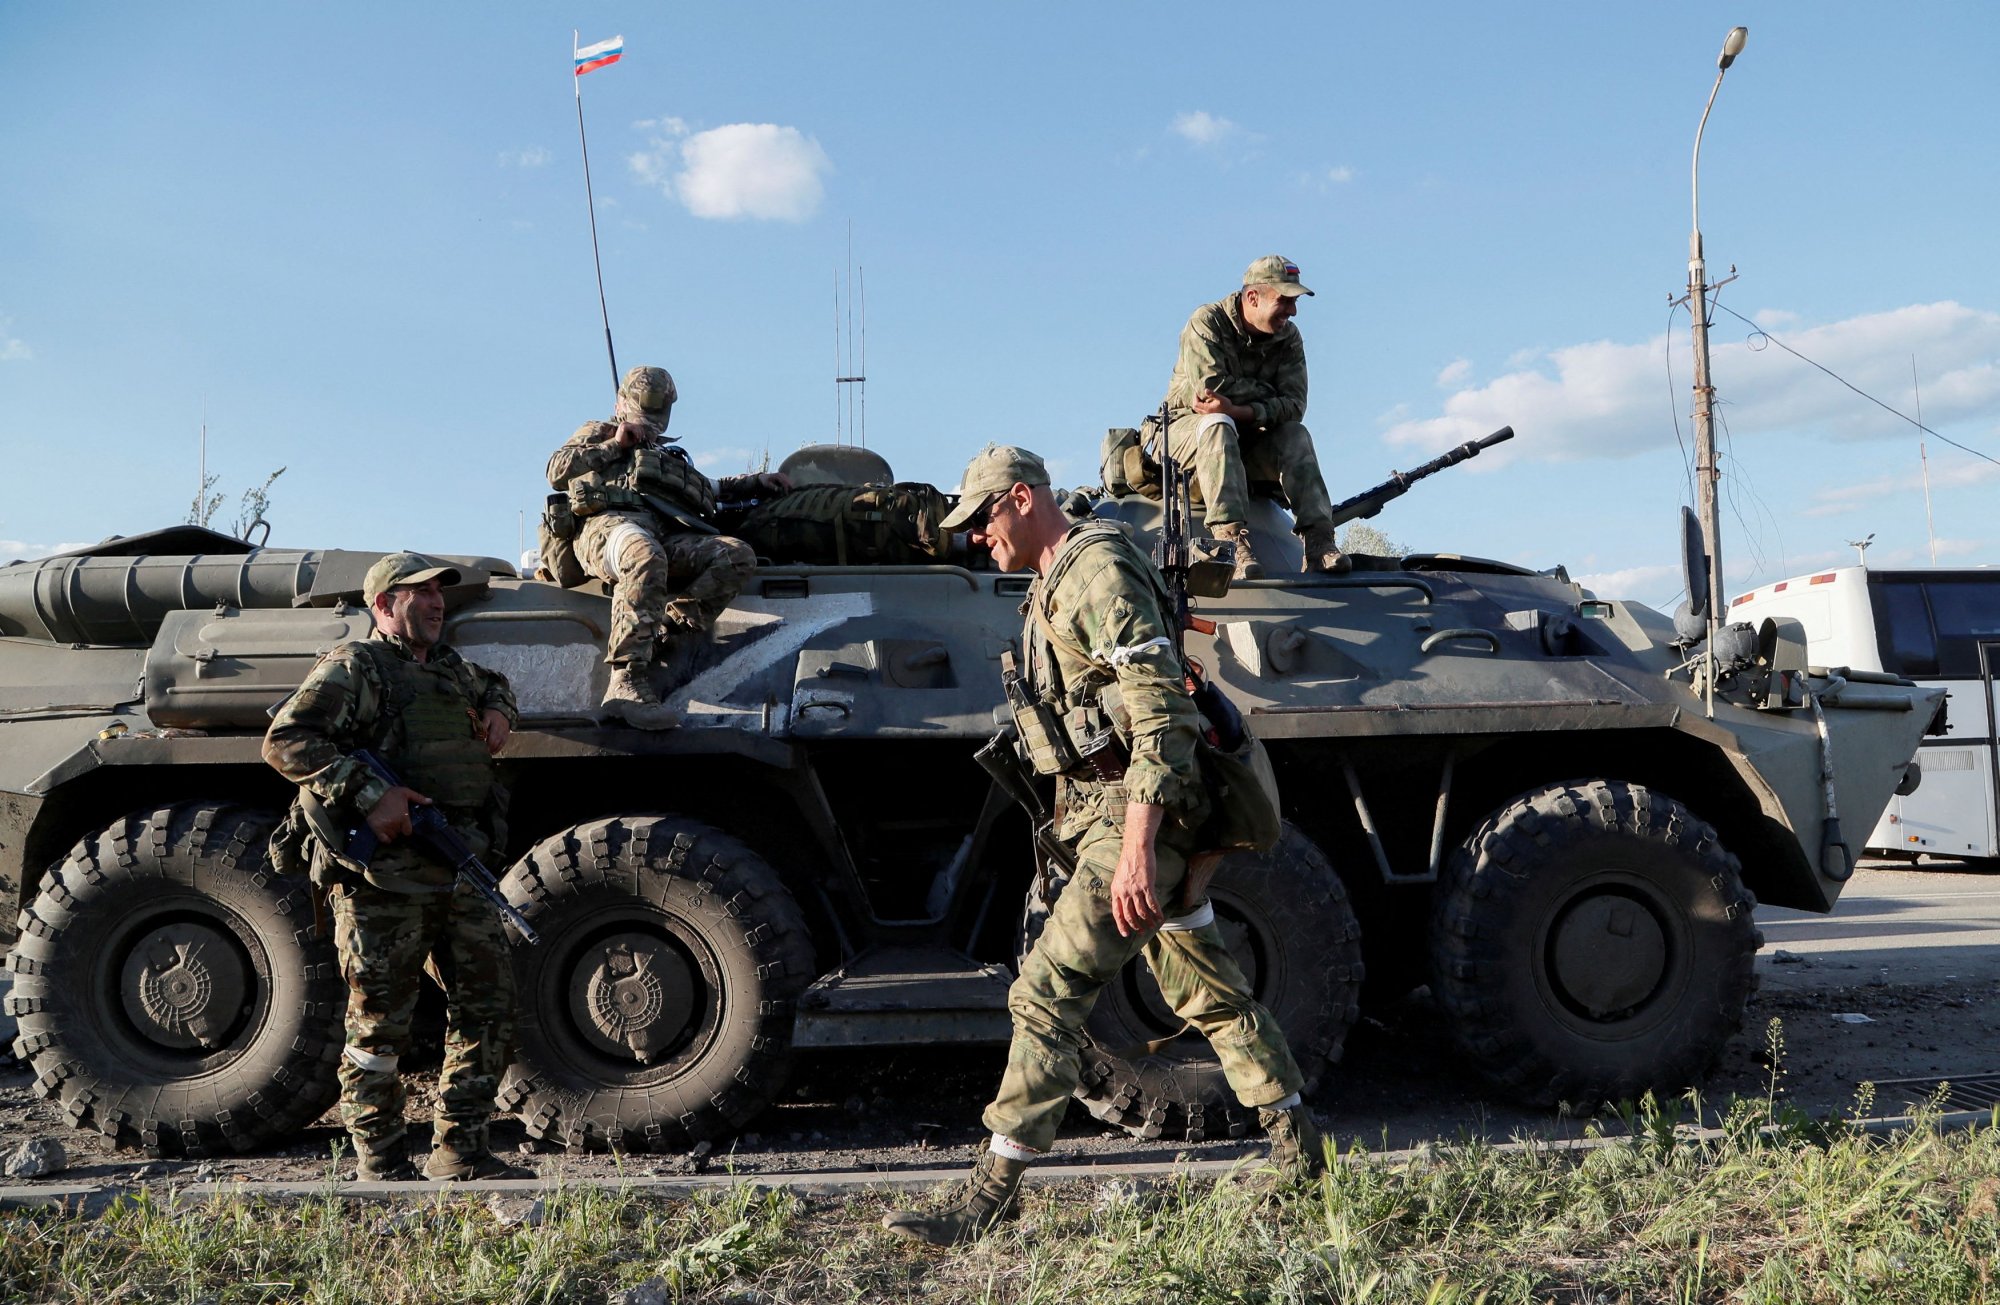 Ουκρανία: 150.000 στρατιώτες της Ρωσίας έχουν σκοτωθεί στον πόλεμο, σύμφωνα με τον Γάλλο υπουργό Εξωτερικών